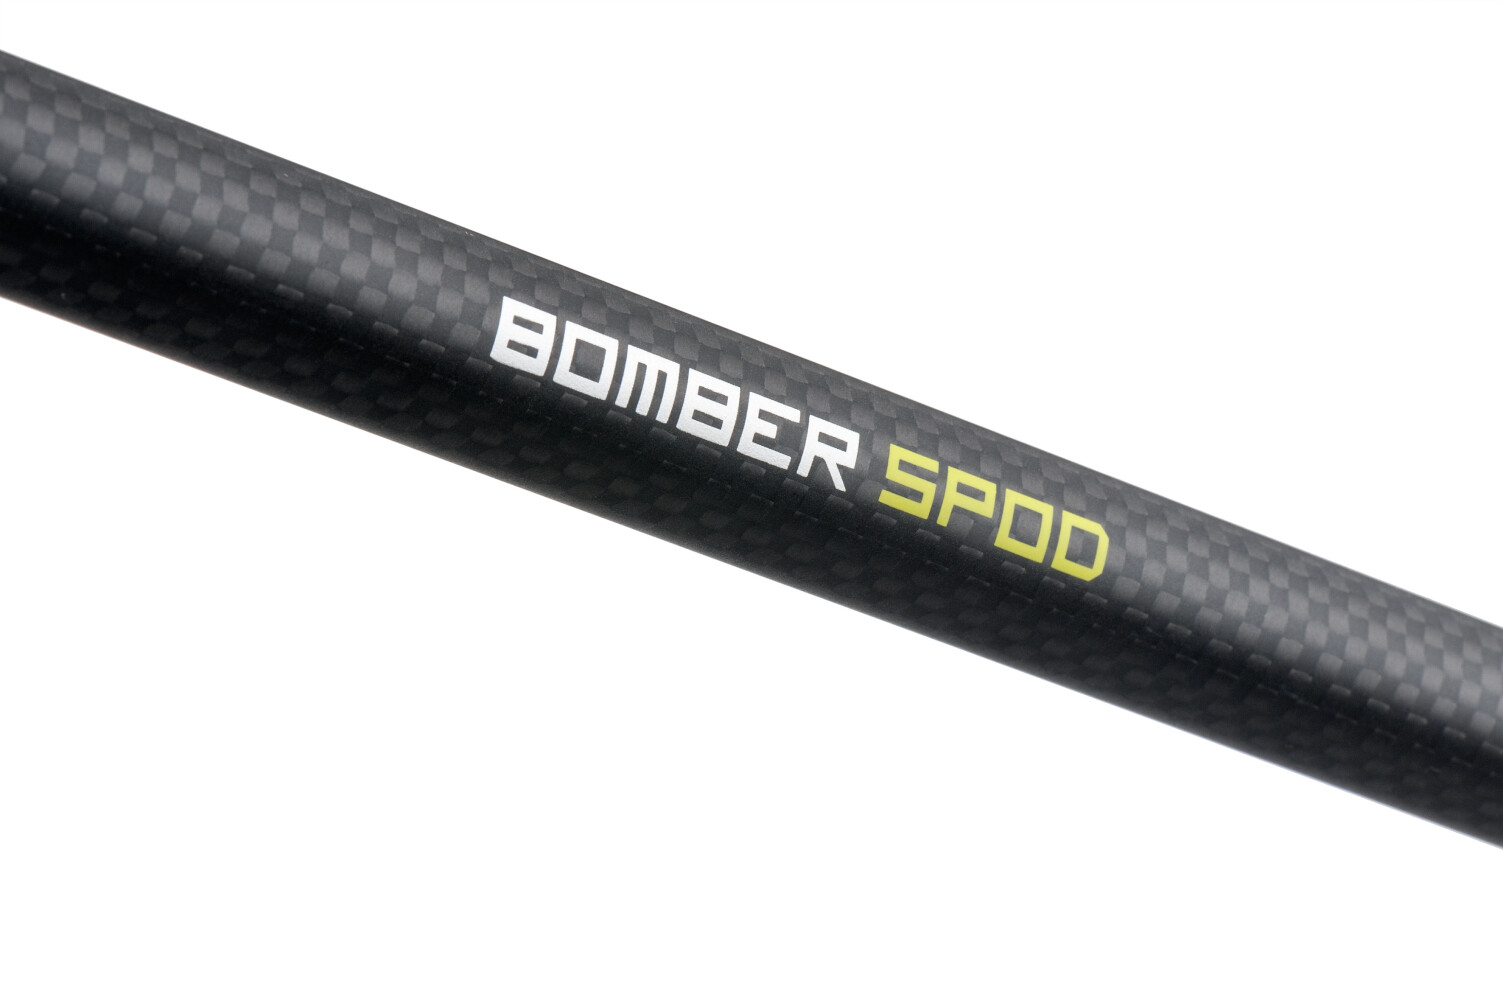 Bomber Spod 360EH